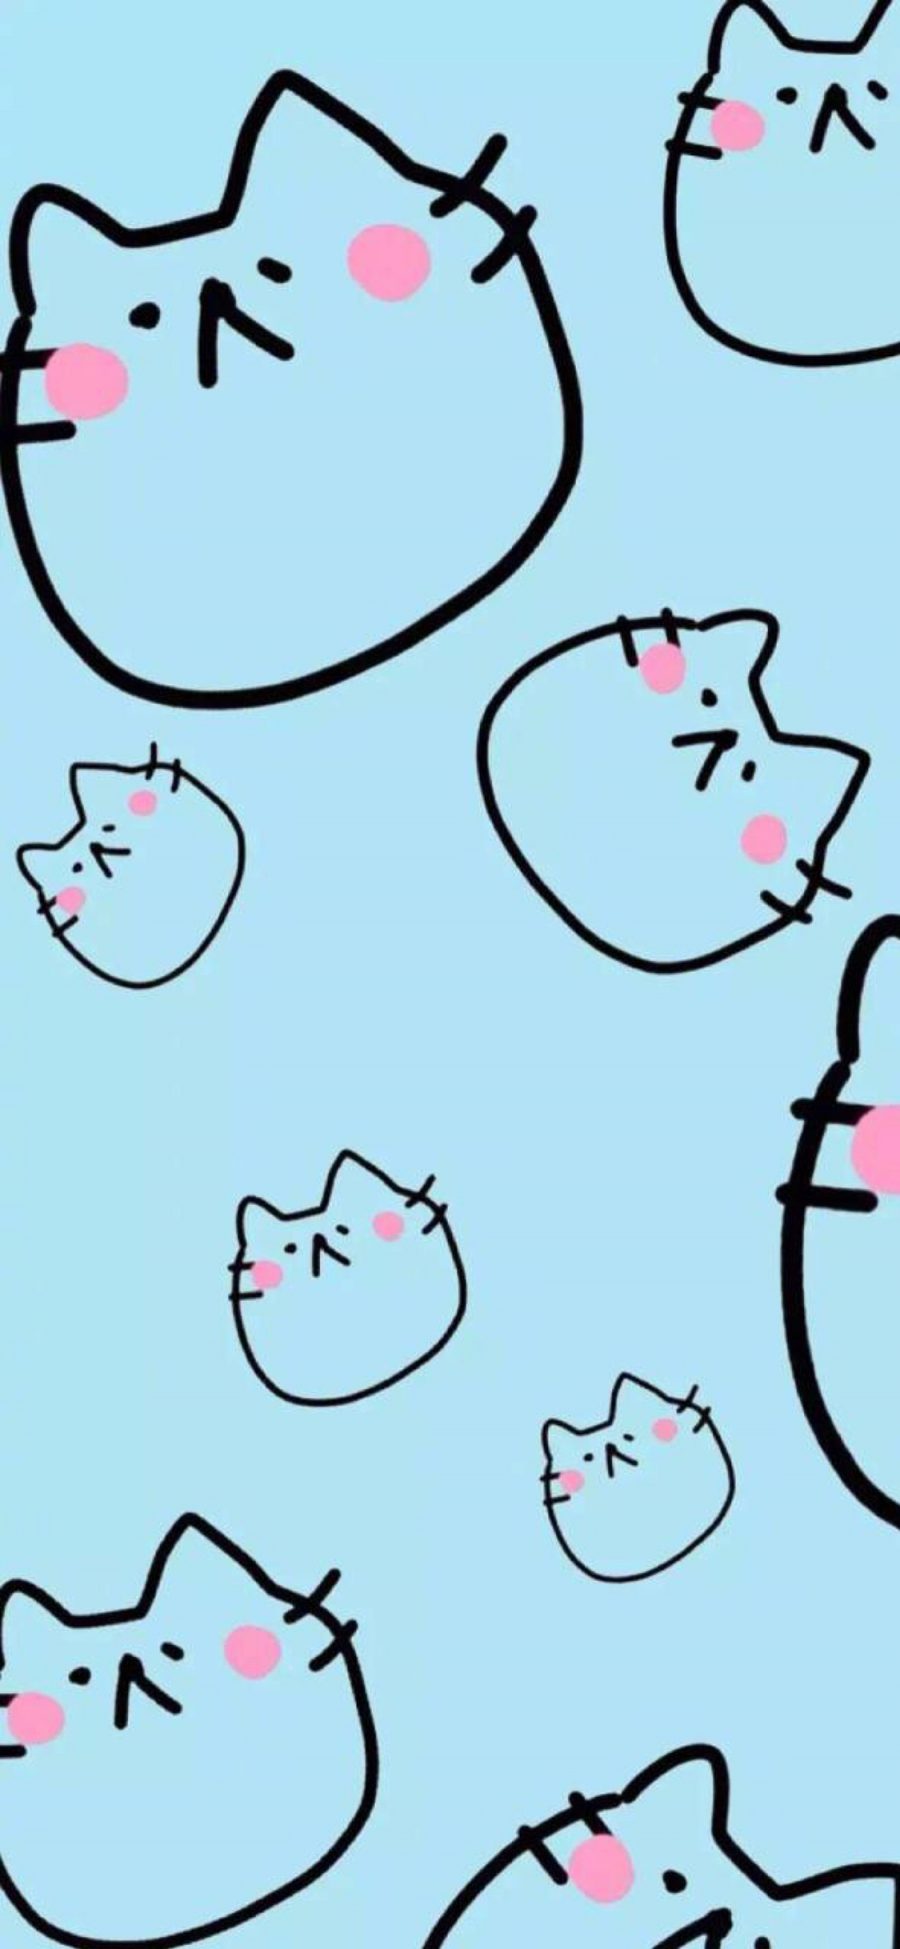 [2436×1125]蓝色背景 卡通 猫咪头 可爱 苹果手机动漫壁纸图片